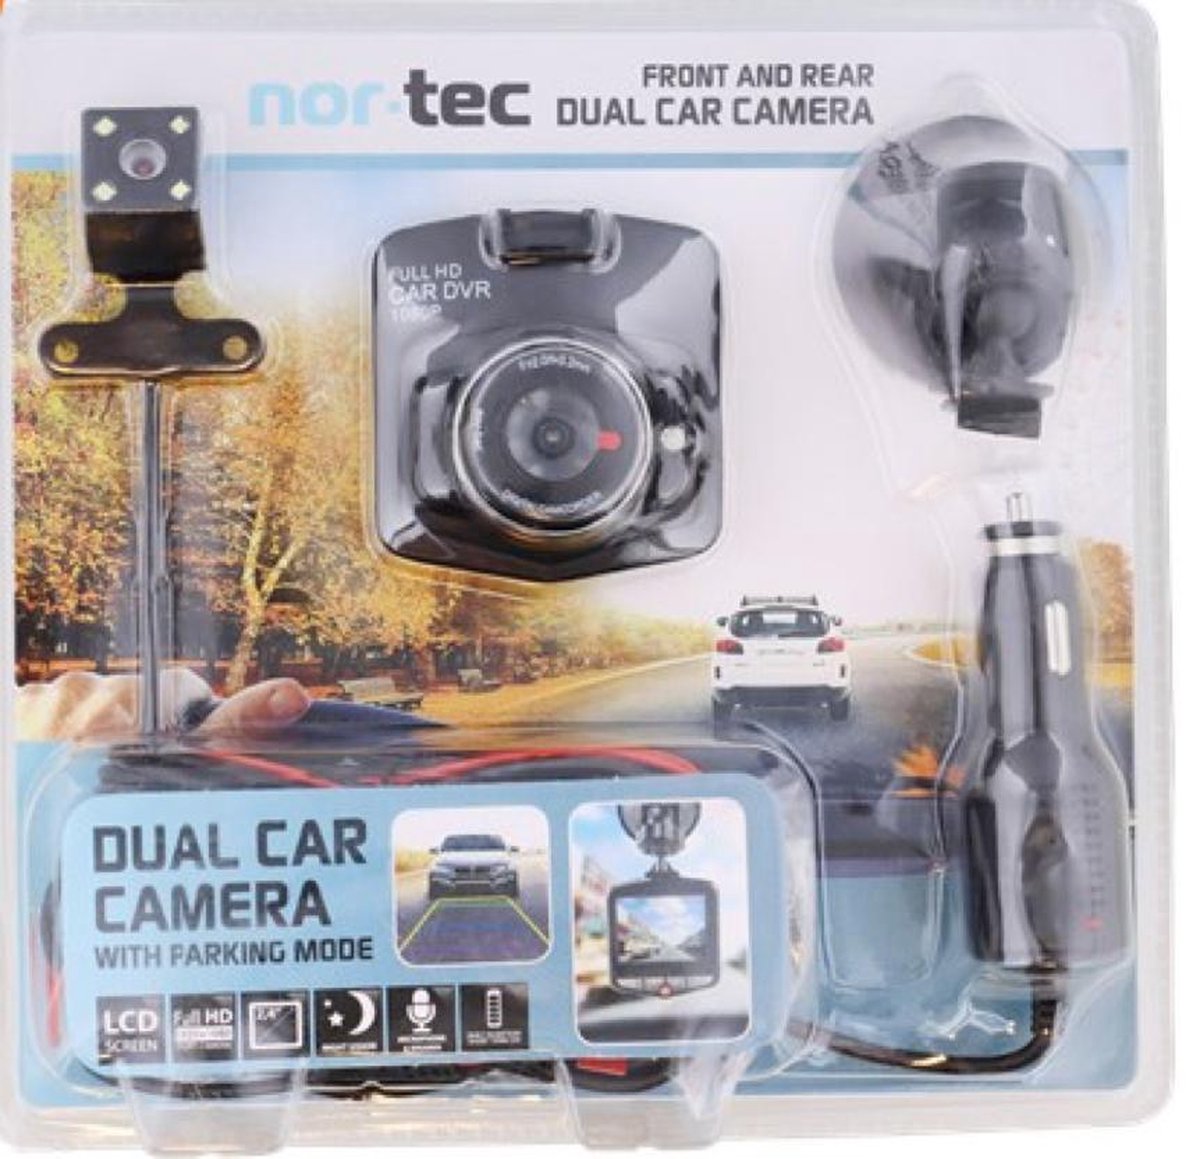 Dashboard camera - Full HD - Met microfoon, parkeerfunctie en night vision - Dashcam - Voor en achteruitrijcamera